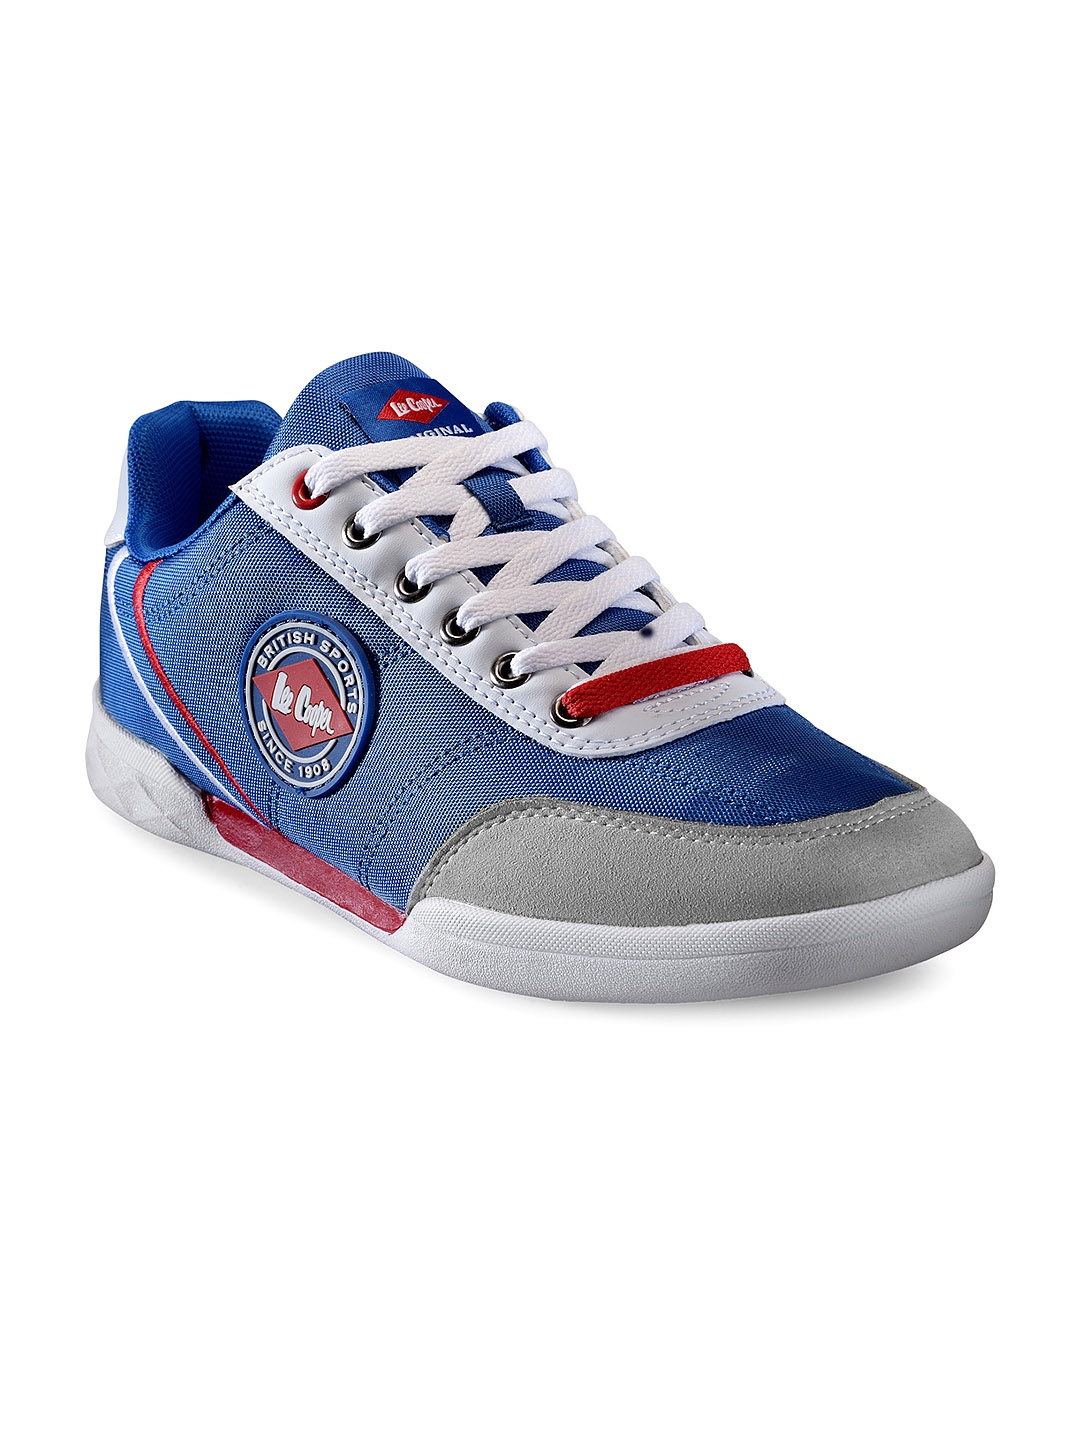 lee cooper navy blue sneakers